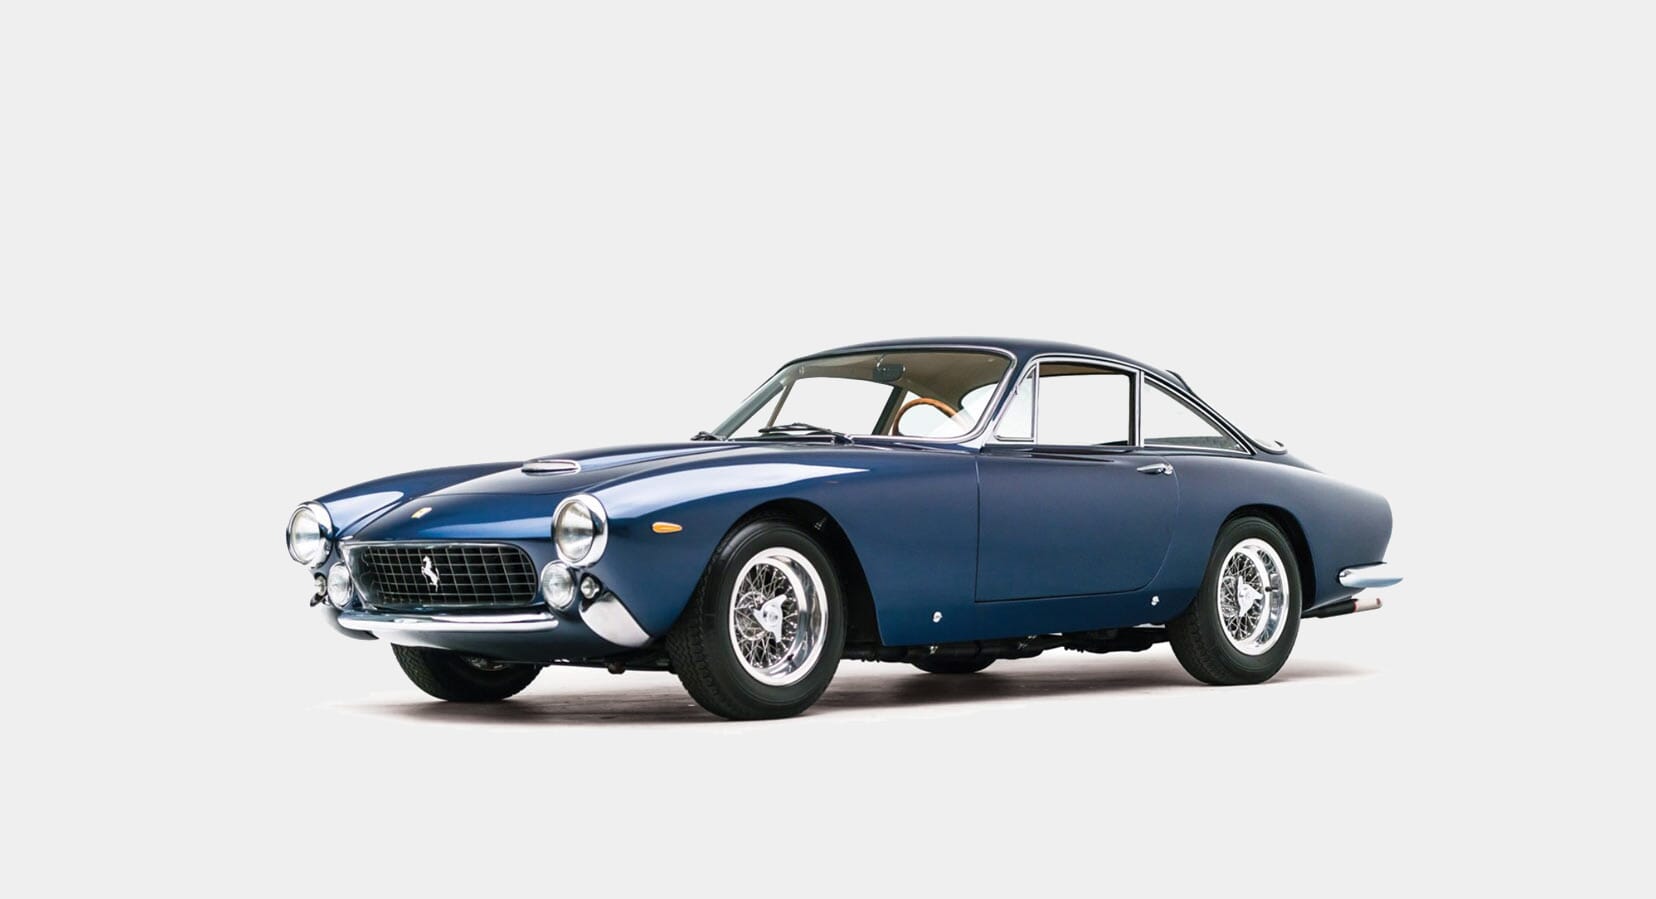 Classic Car Find of the Week: 1964 Ferrari 250 GT/L Berlinetta Lusso